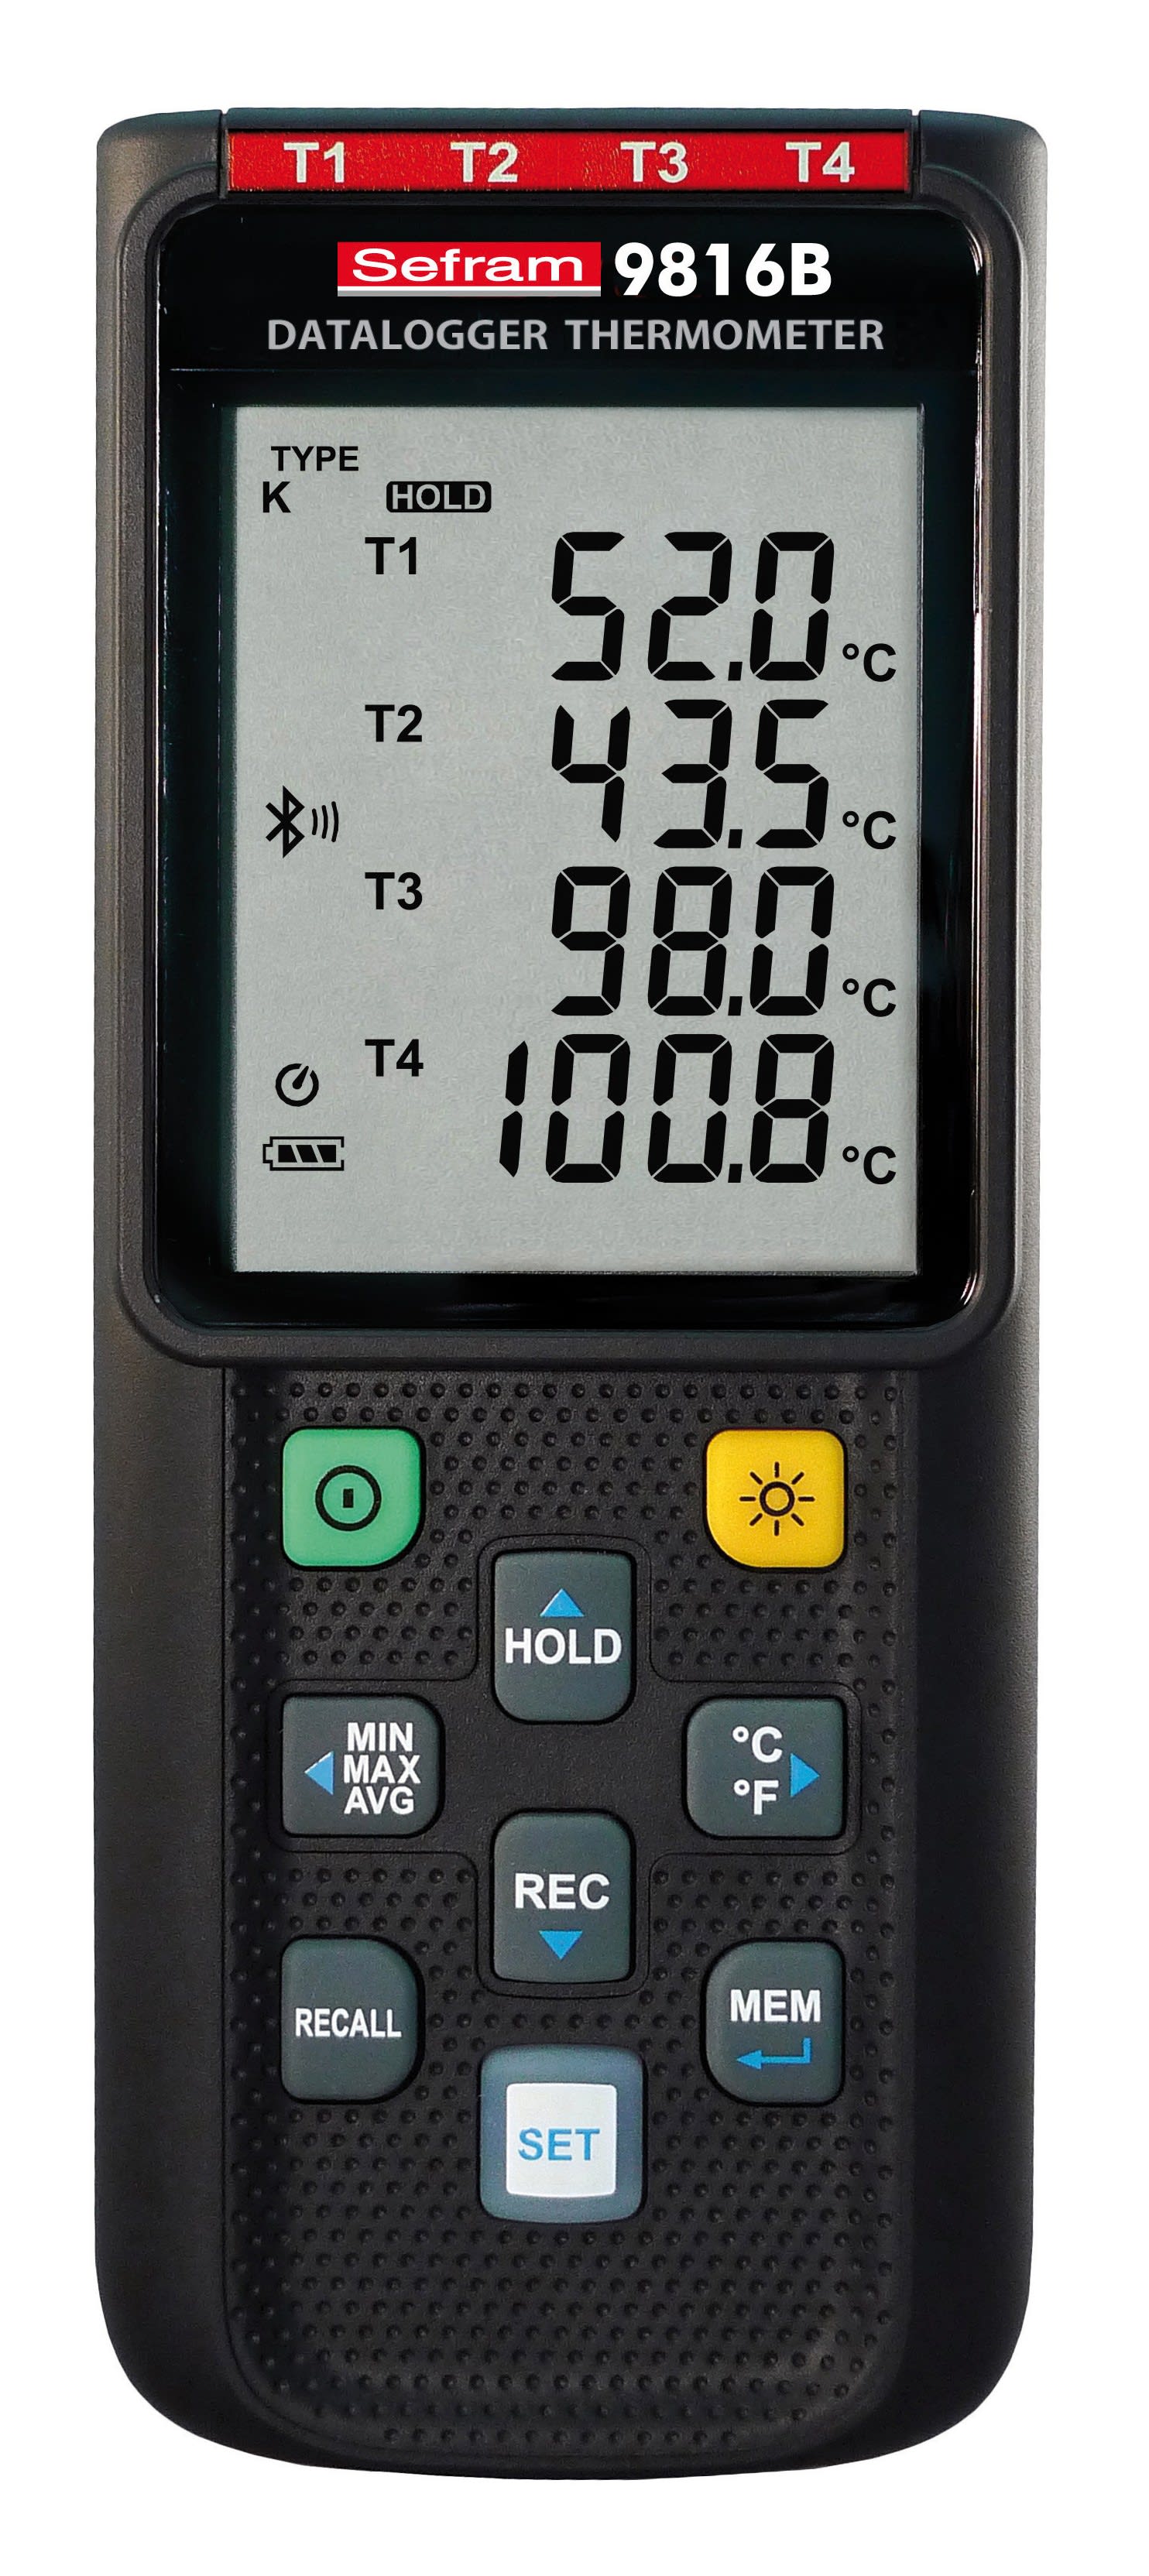 Sefram - Thermomètre 4 entrées 4 afficheur. Thermocouple de type K,J,E,T,N,R,S, Bluetooth